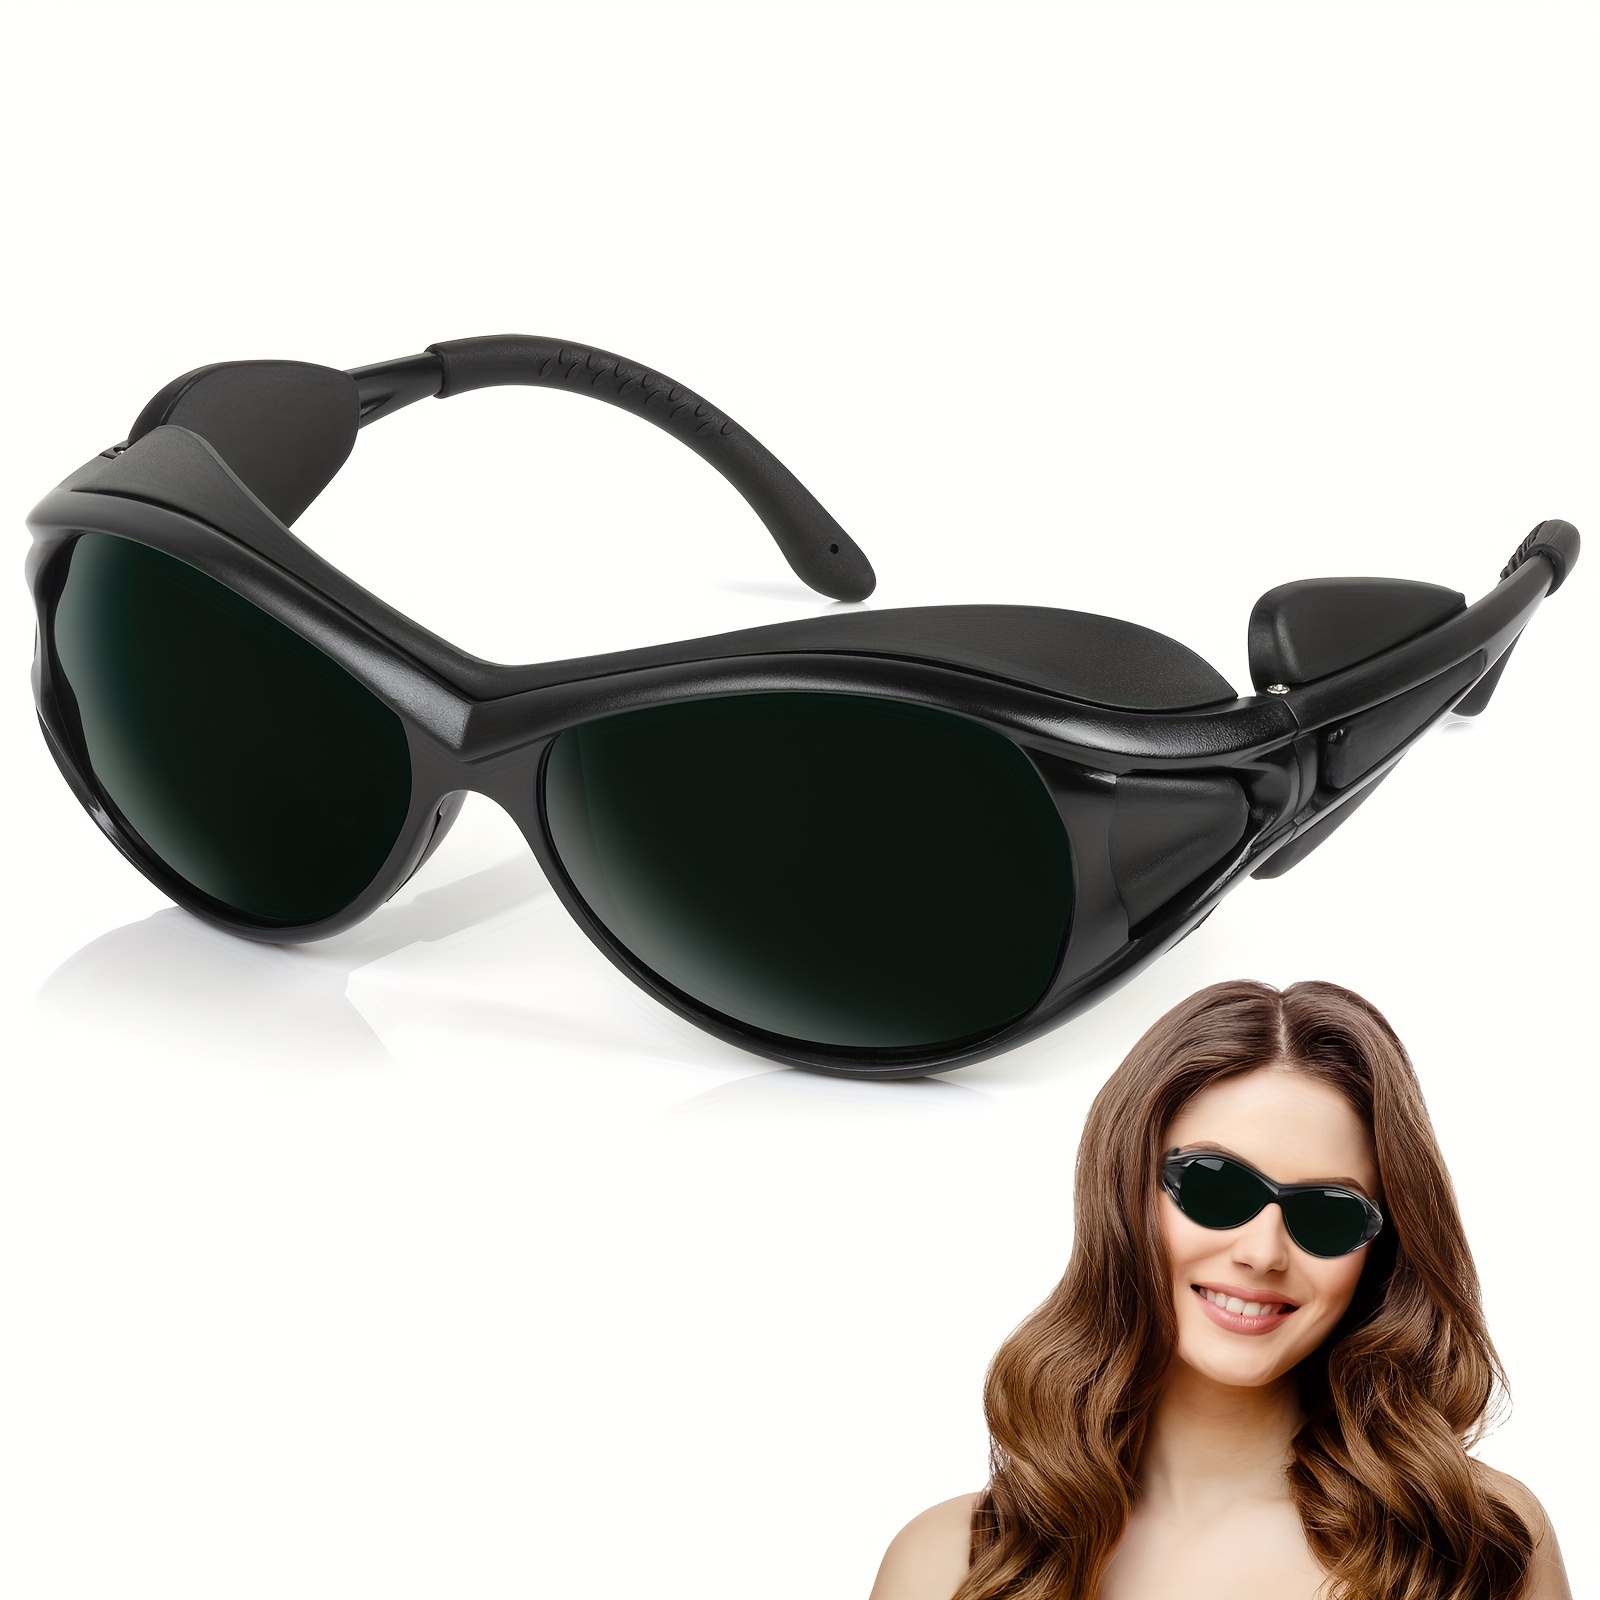 Gafas de bronceado para protección ocular, protección ocular para gafas de  terapia de luz roja, gafas de seguridad láser IPL para tratamiento de